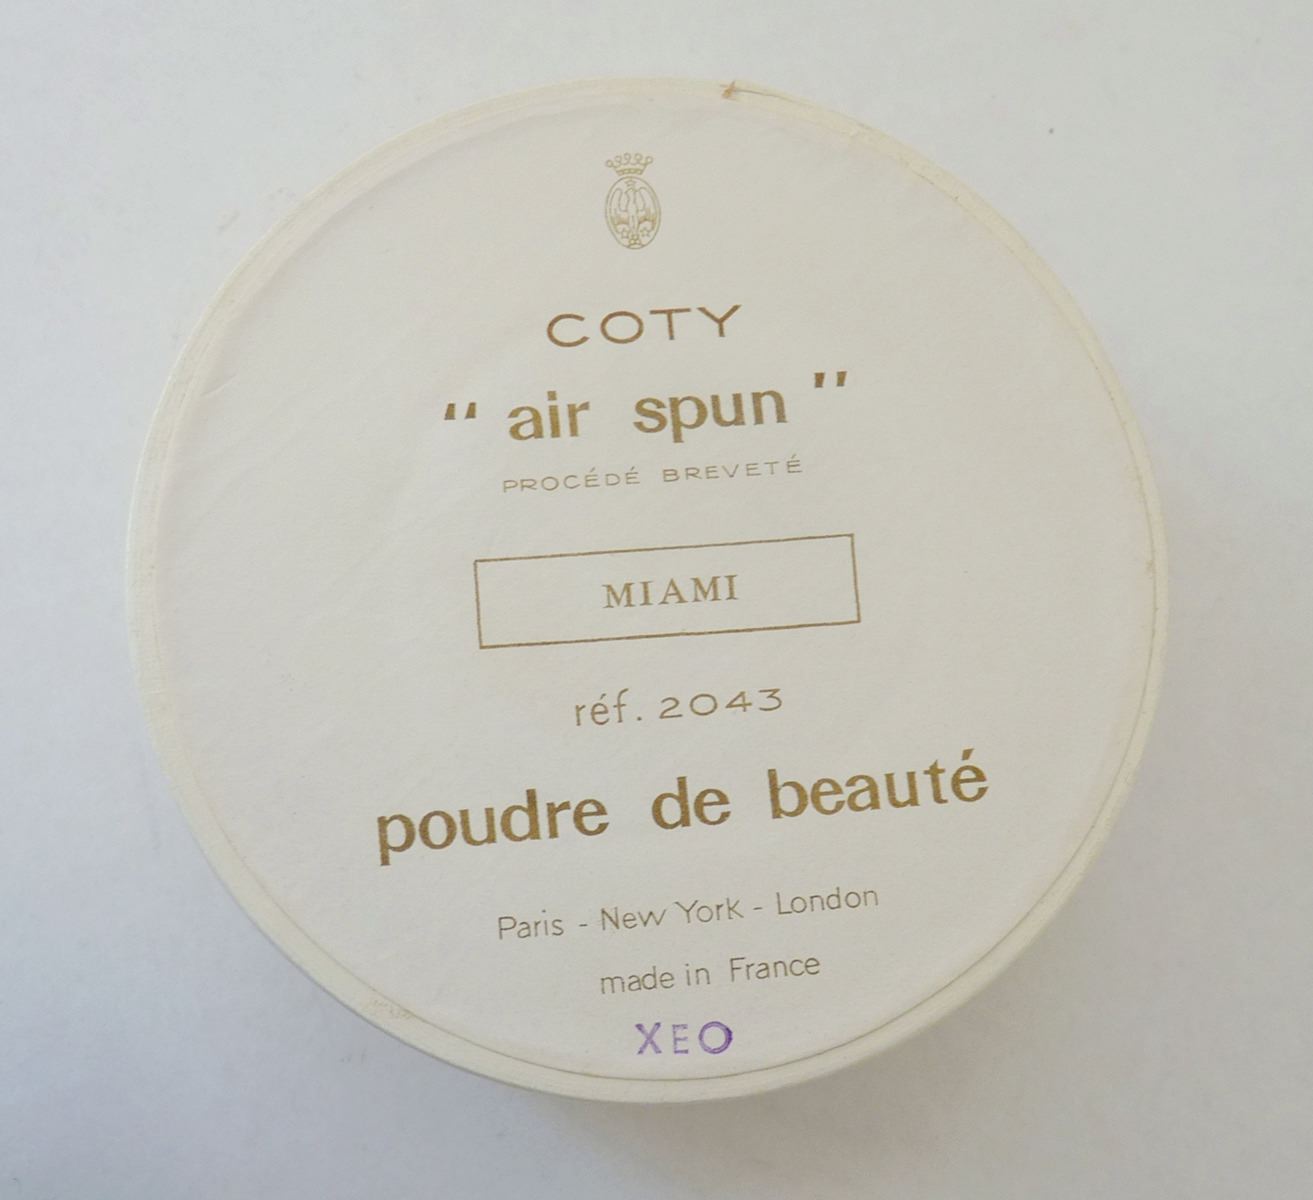 Poudre de beauté “Air Spun” teinte Miami de COTY